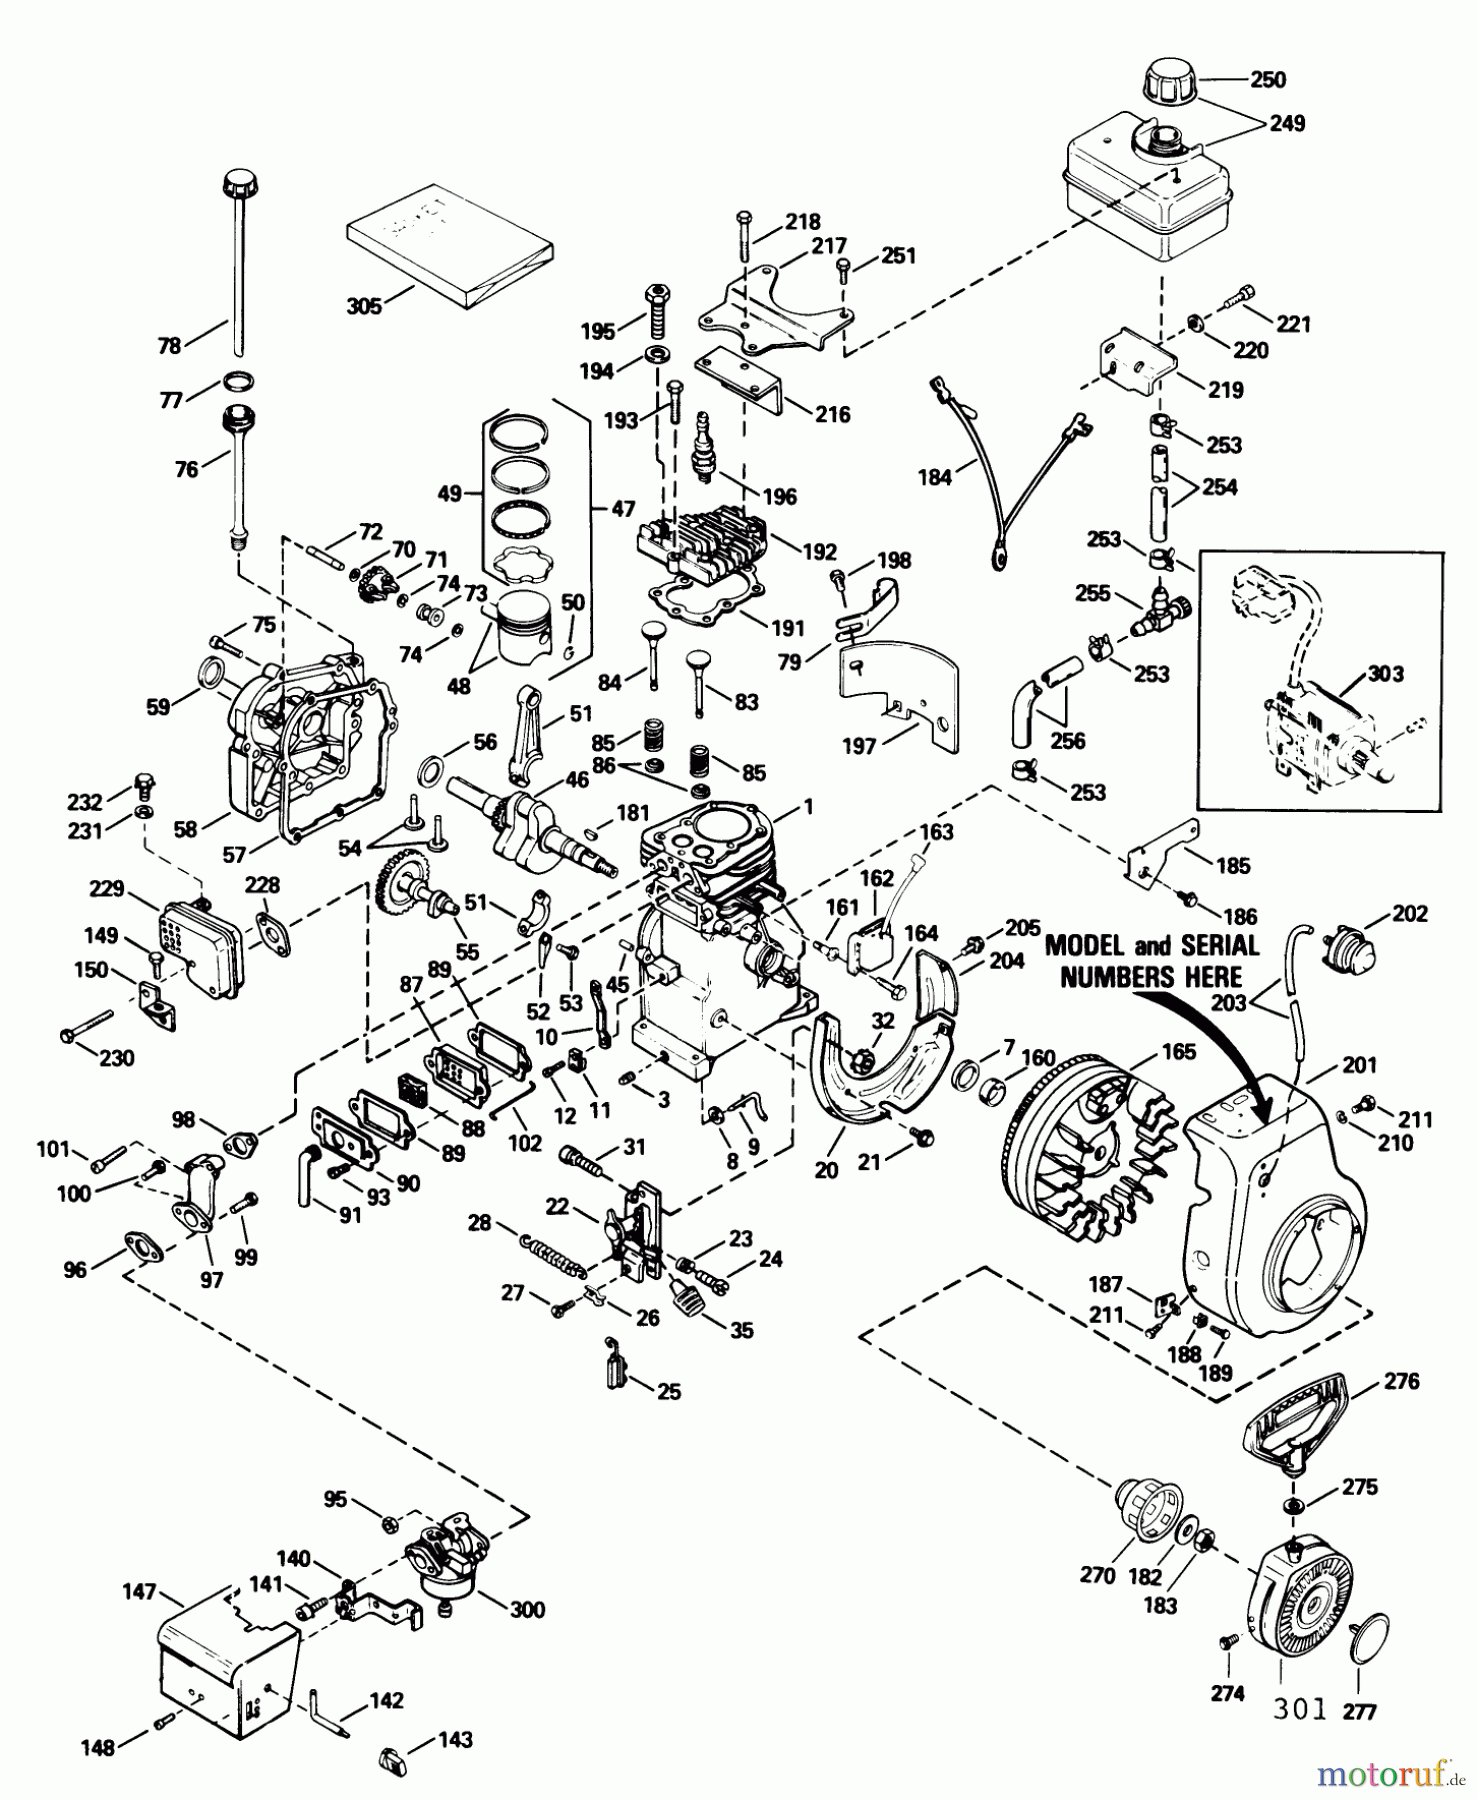  Toro Neu Snow Blowers/Snow Throwers Seite 1 38052 (521) - Toro 521 Snowthrower, 1989 (9000001-9999999) ENGINE TECUMSEH MODEL HS50-67259H